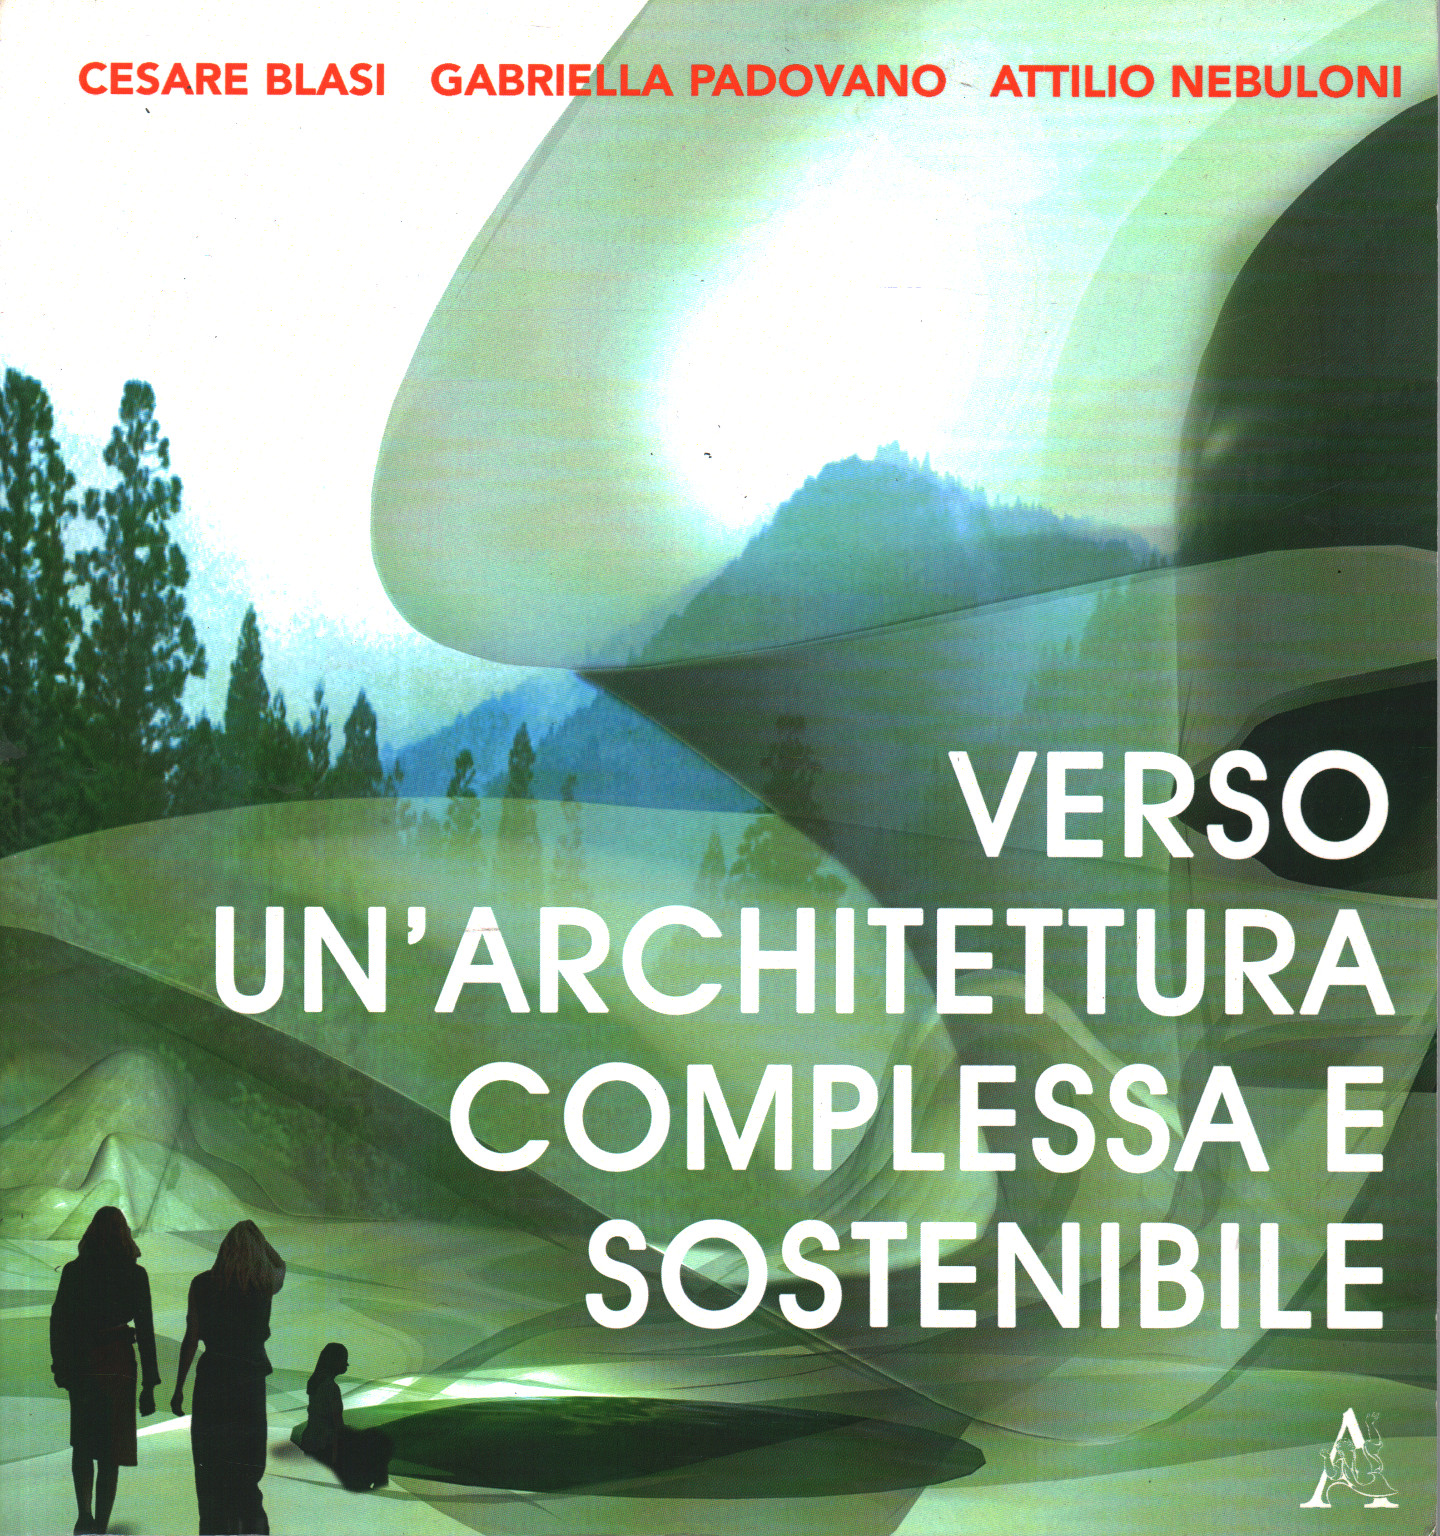 Towards a complex and sustainable architecture / Tow, Cesare Blasi Gabriella Padovano Attilio Nebuloni